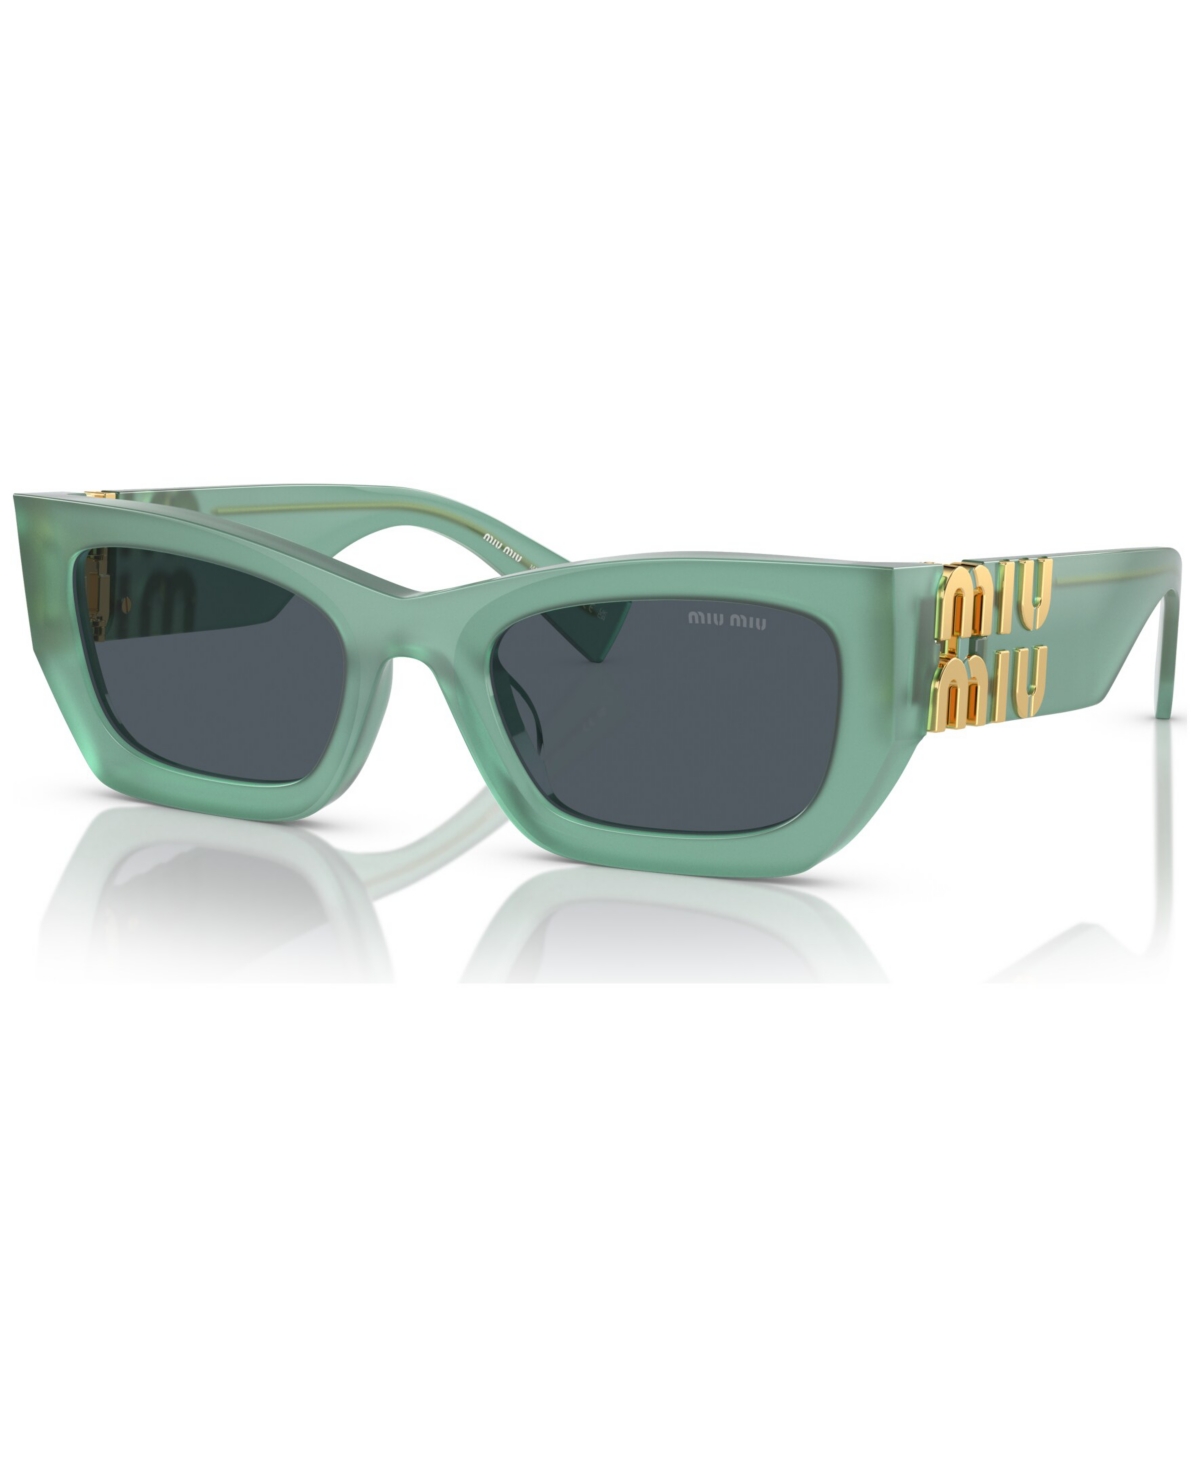 Miu Miu Women's Sunglasses, Mu 09ws In Ivy Opal